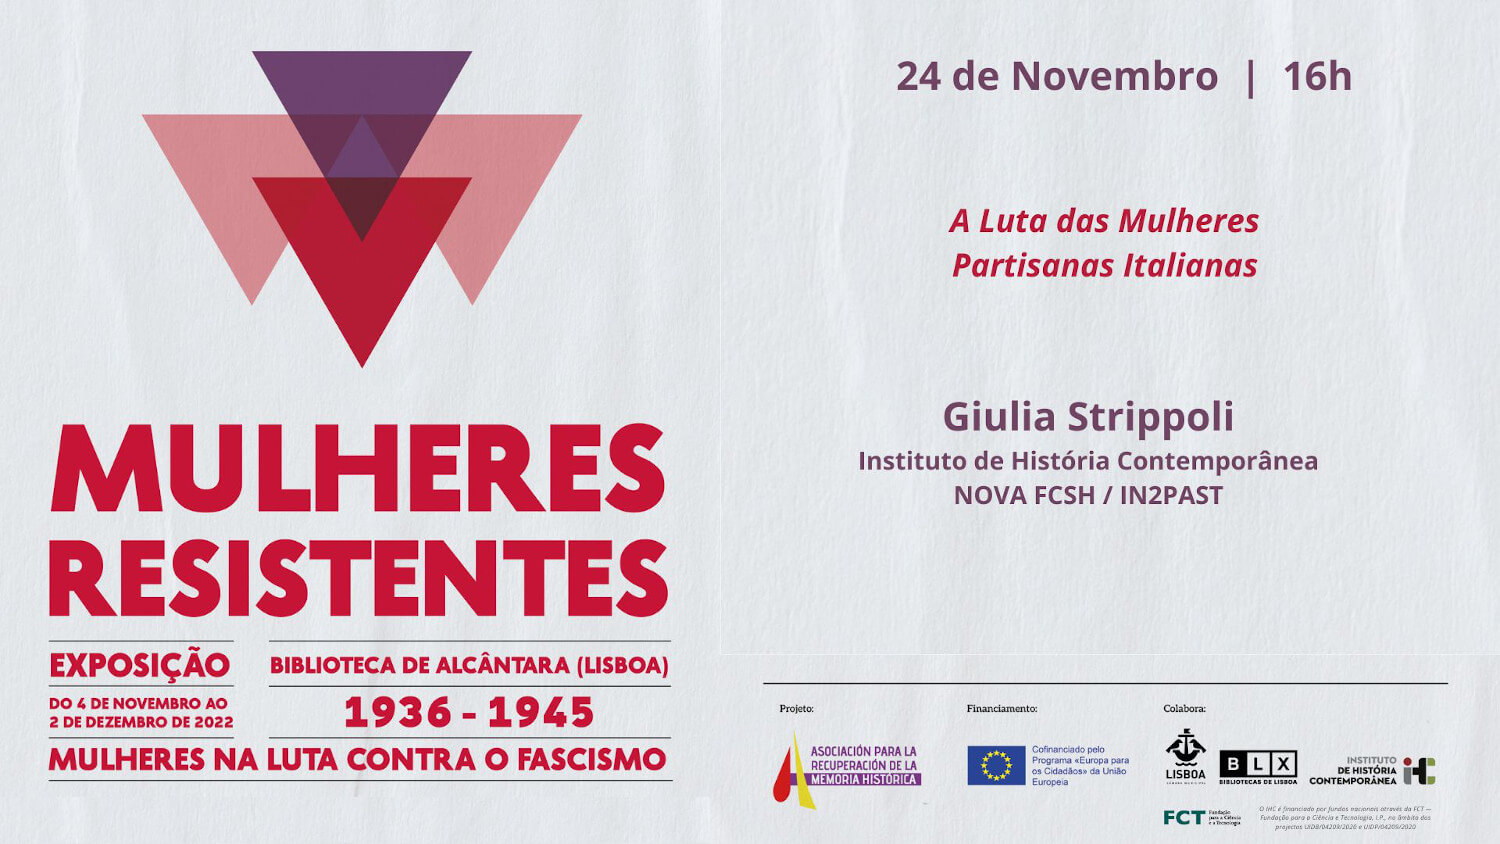 Cartaz da conferência “A Lutas das Mulheres Partisanas Italianas”, com Giulia Strippoli, integrada na exposição "Mulheres Resistentes", patente na Biblioteca Municipal de Alcântara. 24 de Novembro de 2022, às 16 horas.